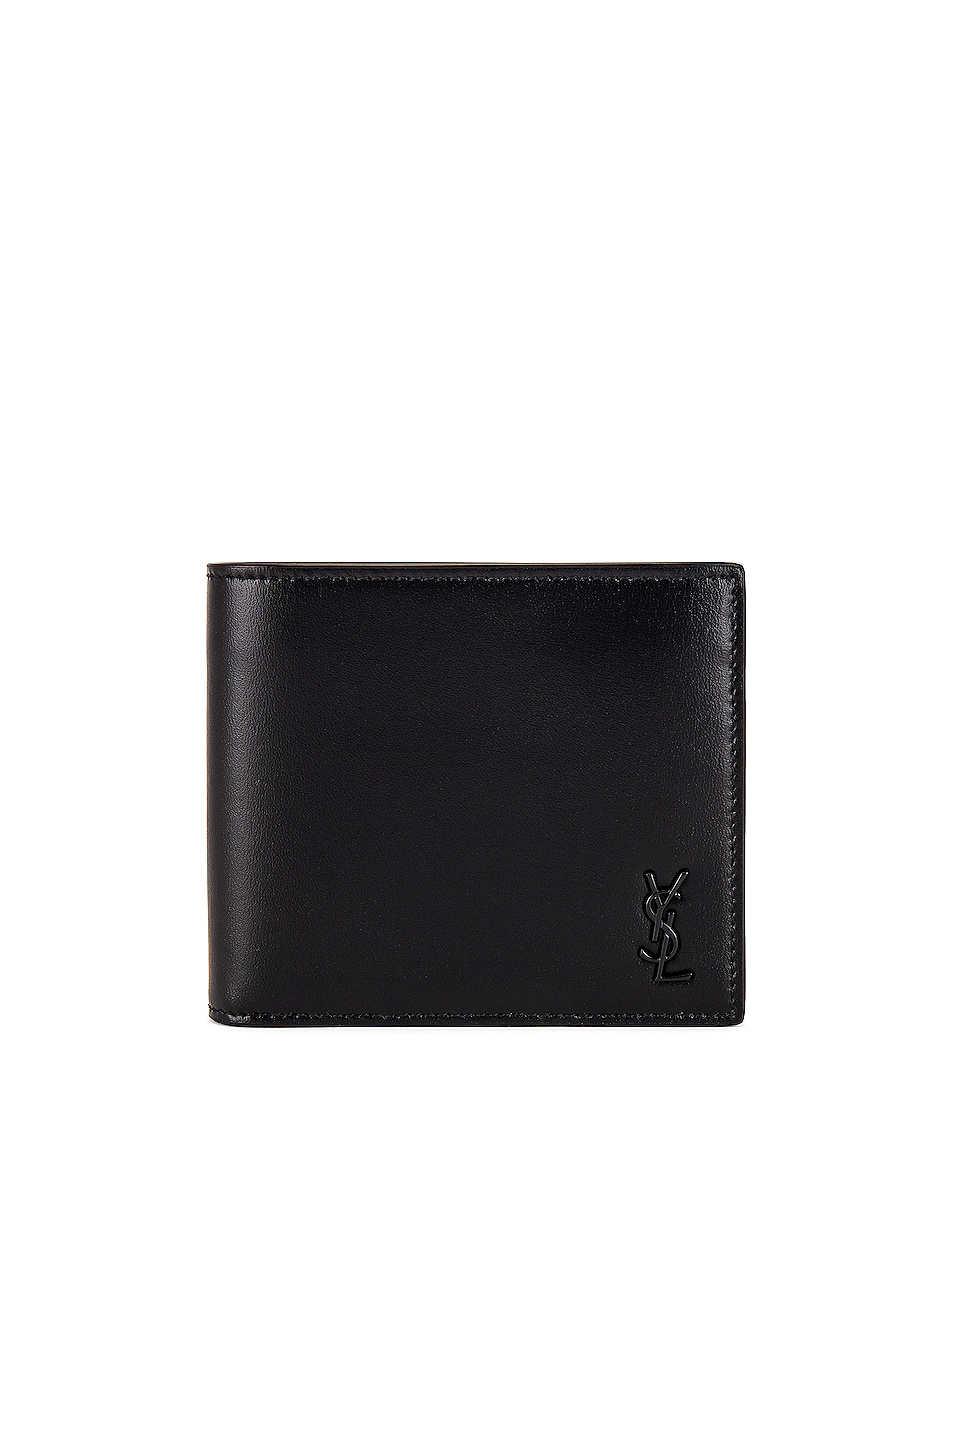 YSL Credit Card Holder in Black